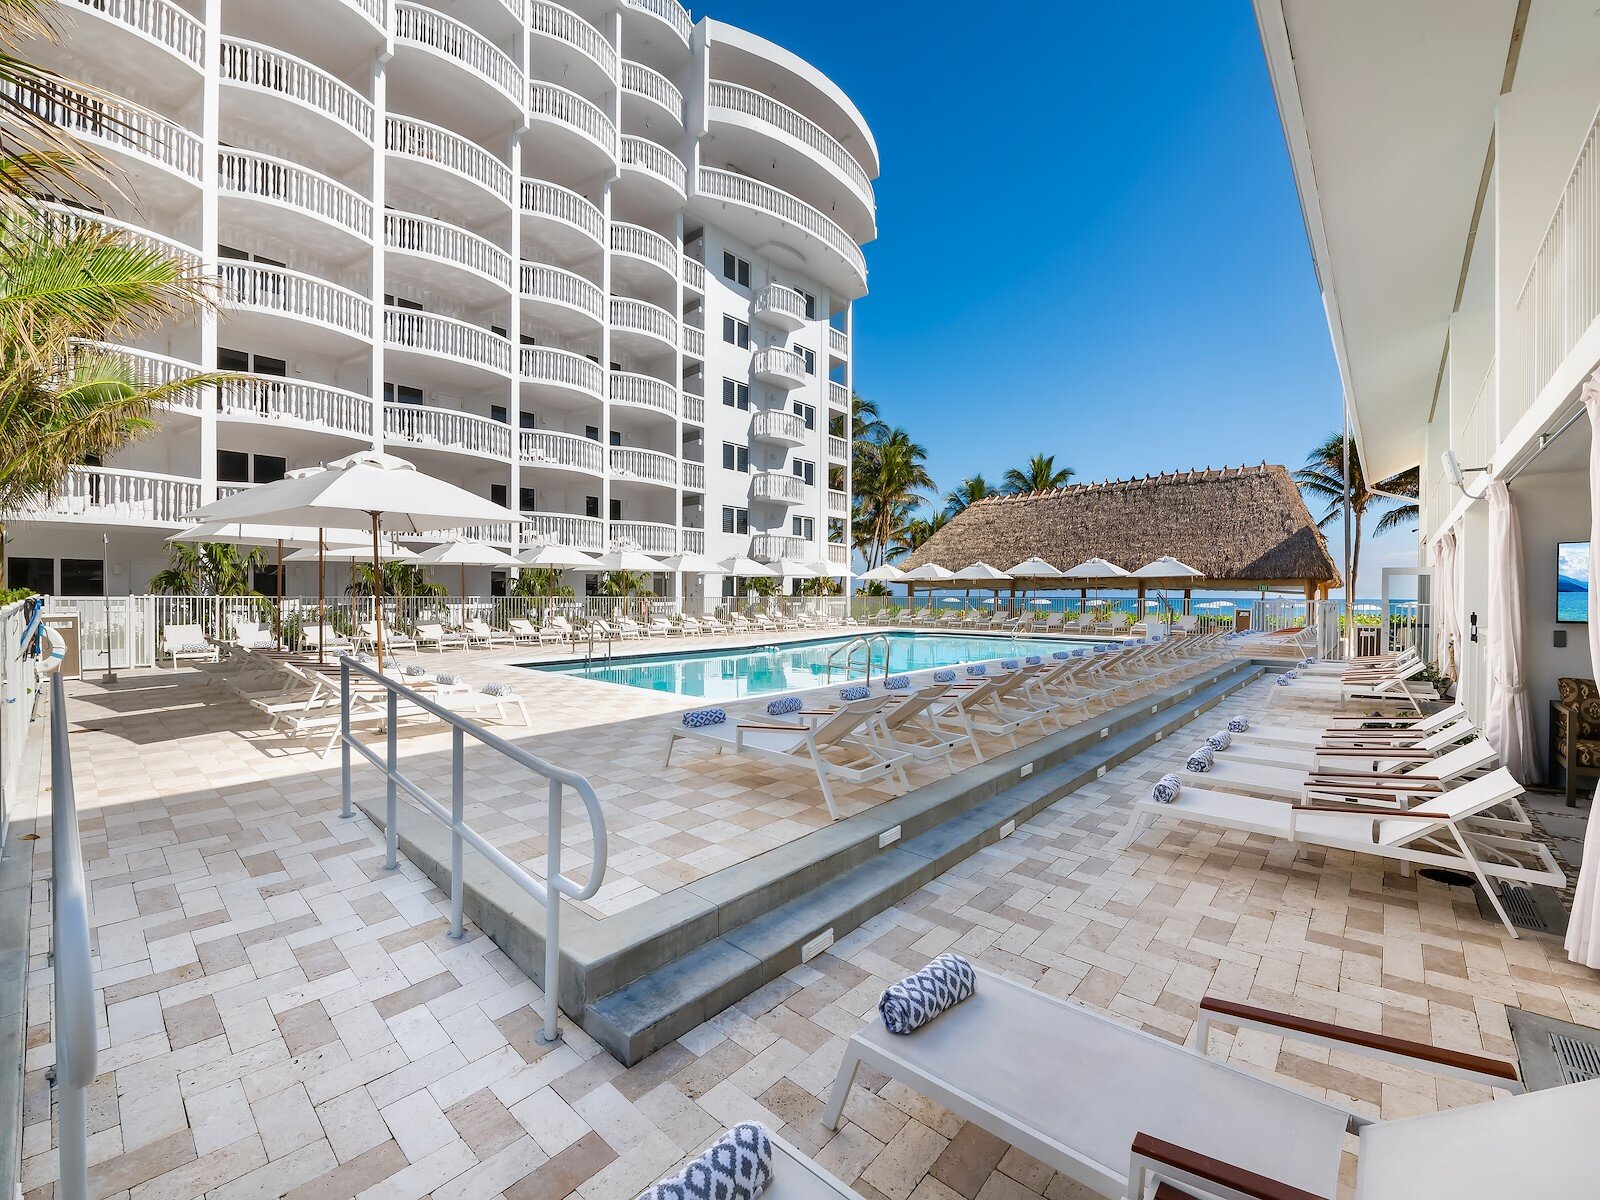 Beachcomber Resort with outdoor pool